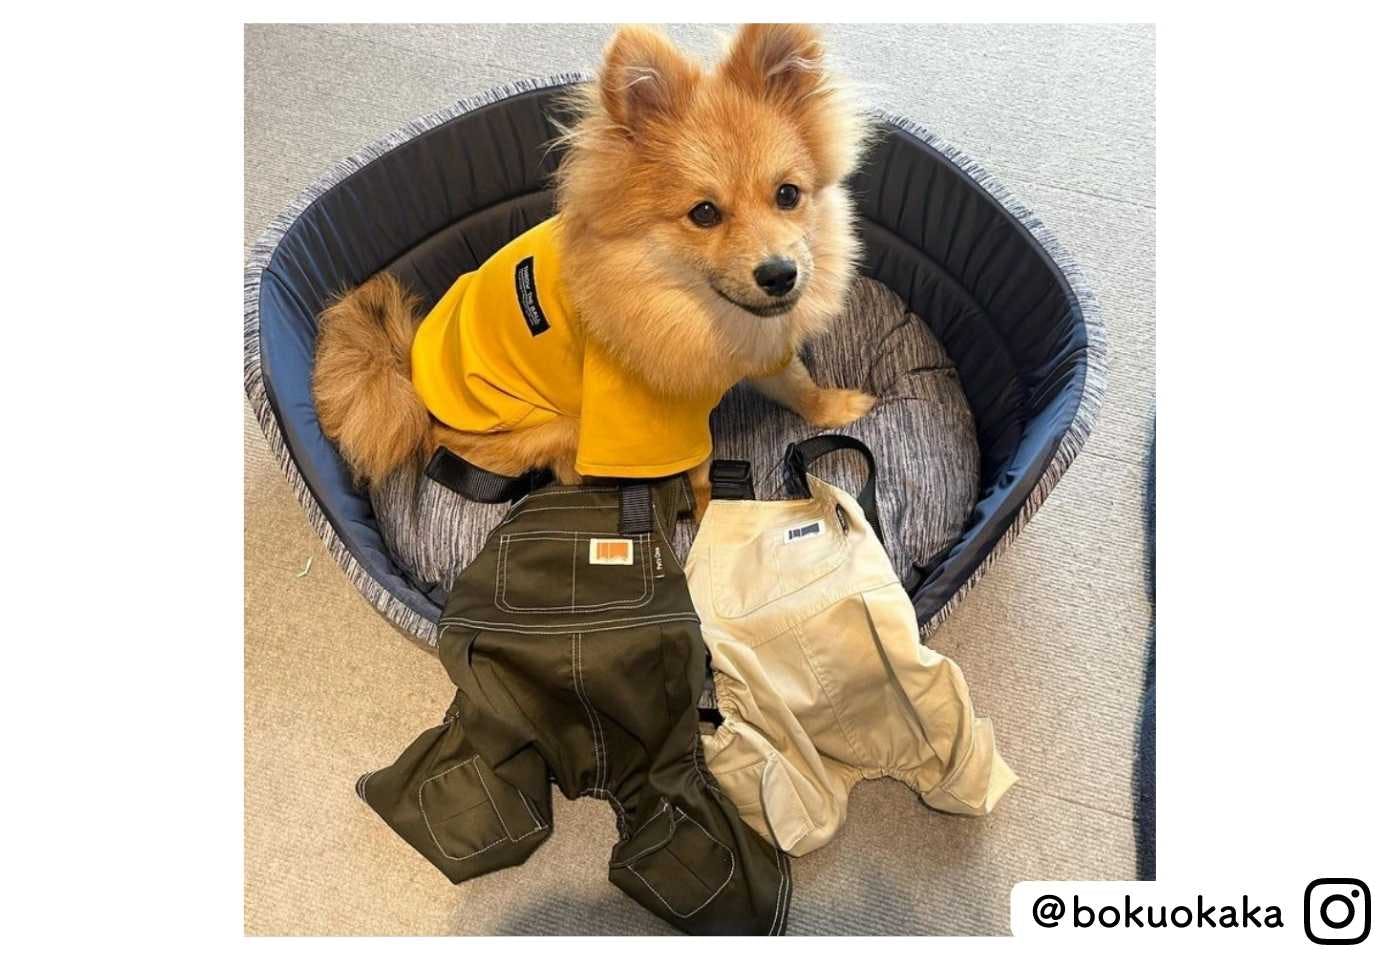 カインズの可愛い犬服パッカブルTシャツを着たポメラニアン@bokuokaka